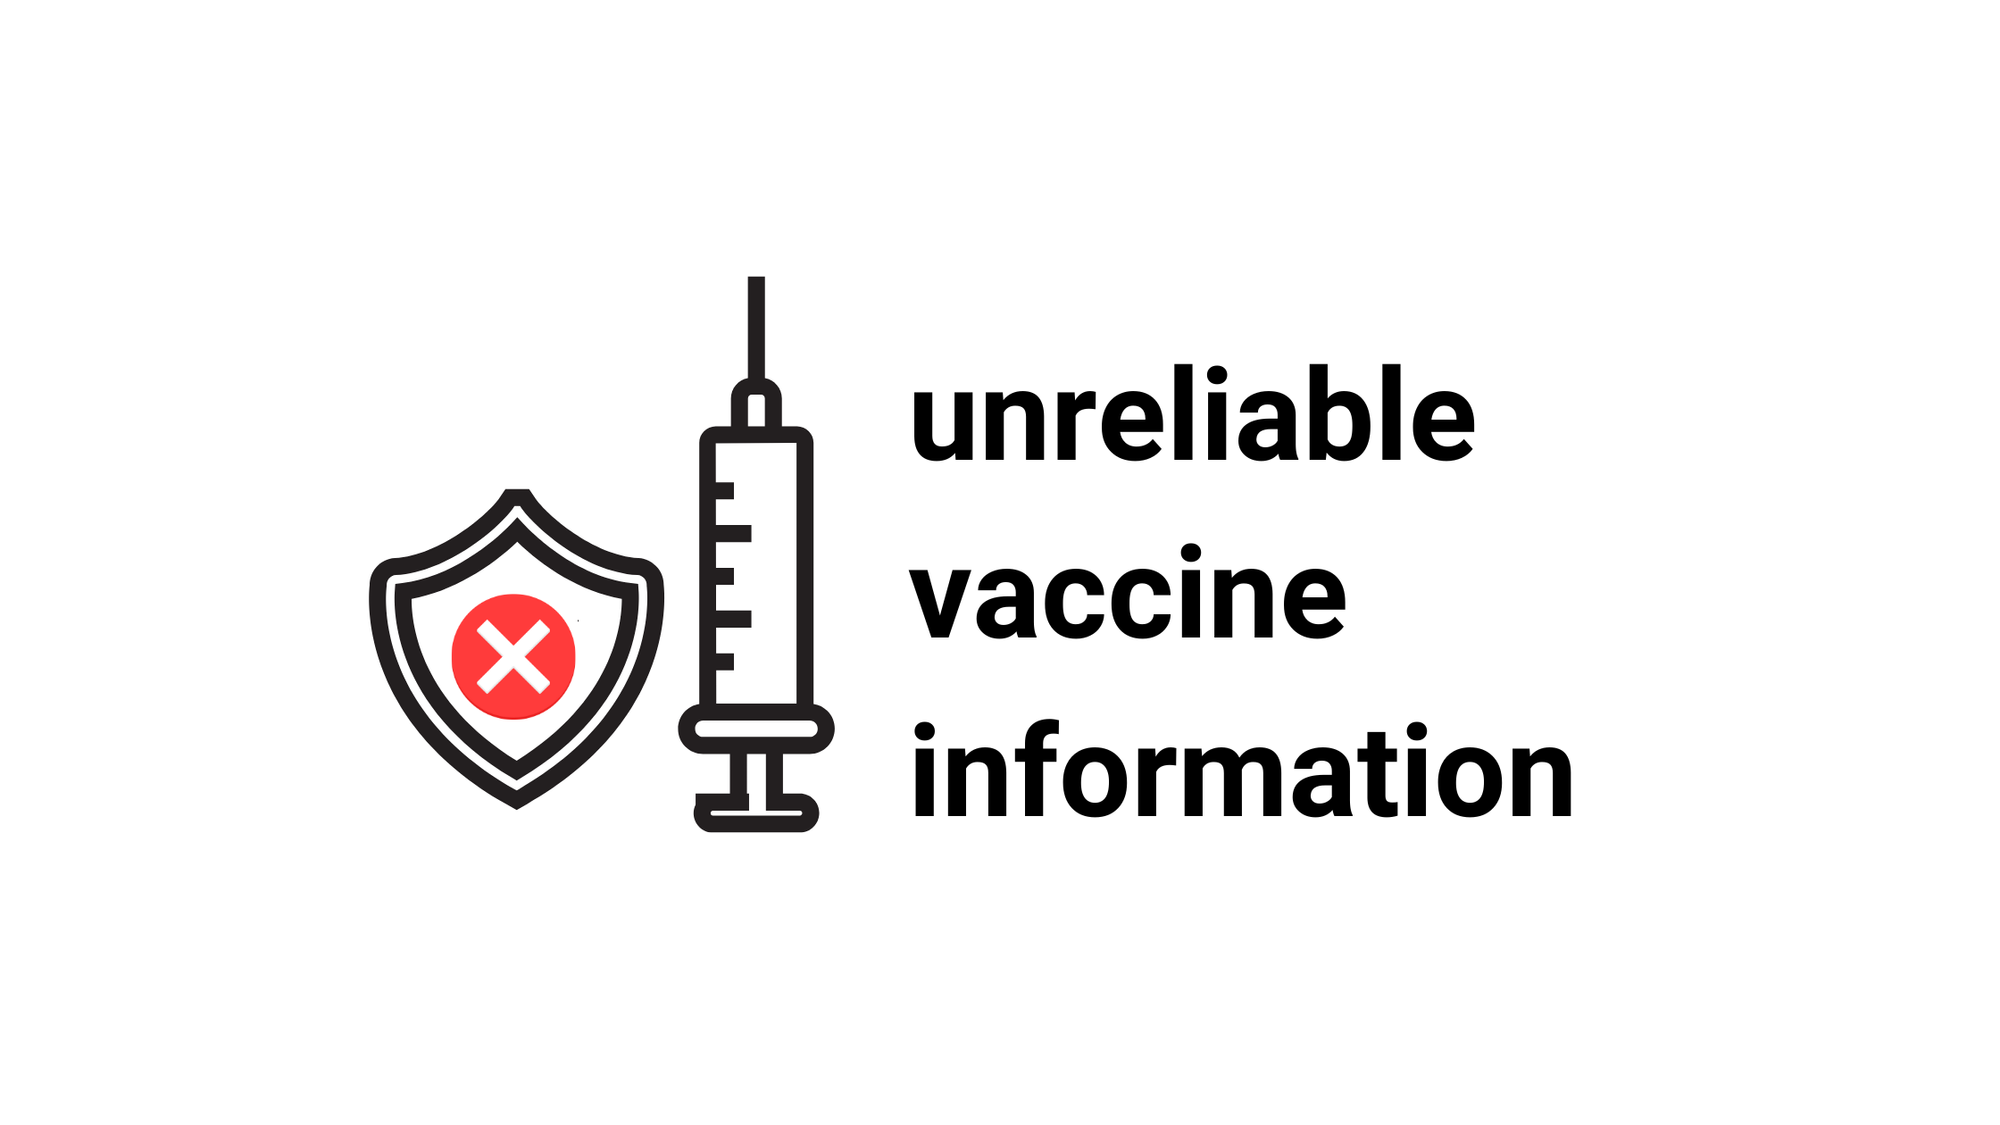 Unreliable Vaccine Information